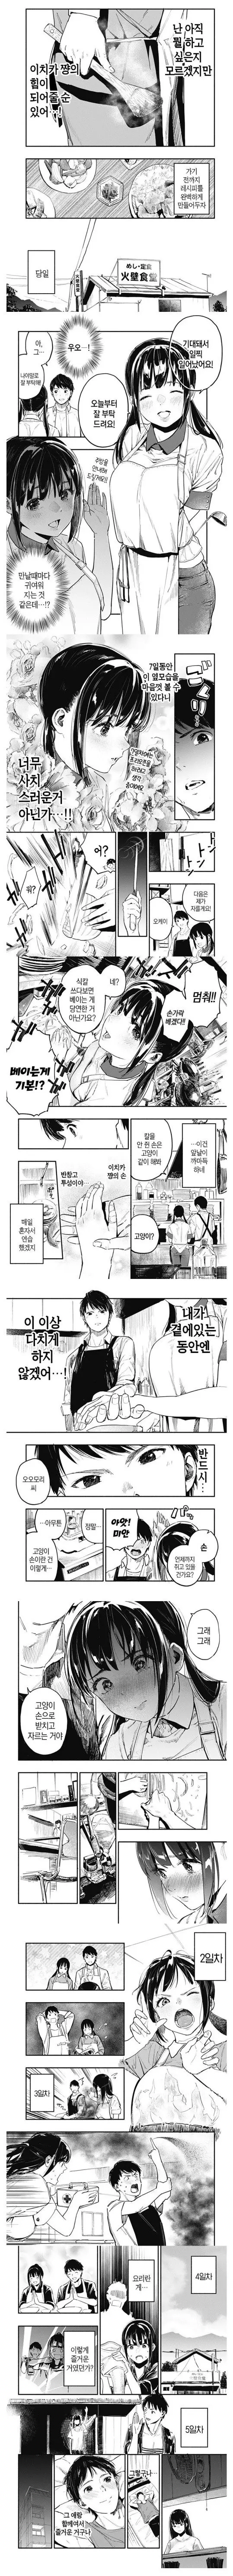 음식점 간판 아가씨에게 반하는 만화.manga | mbong.kr 엠봉